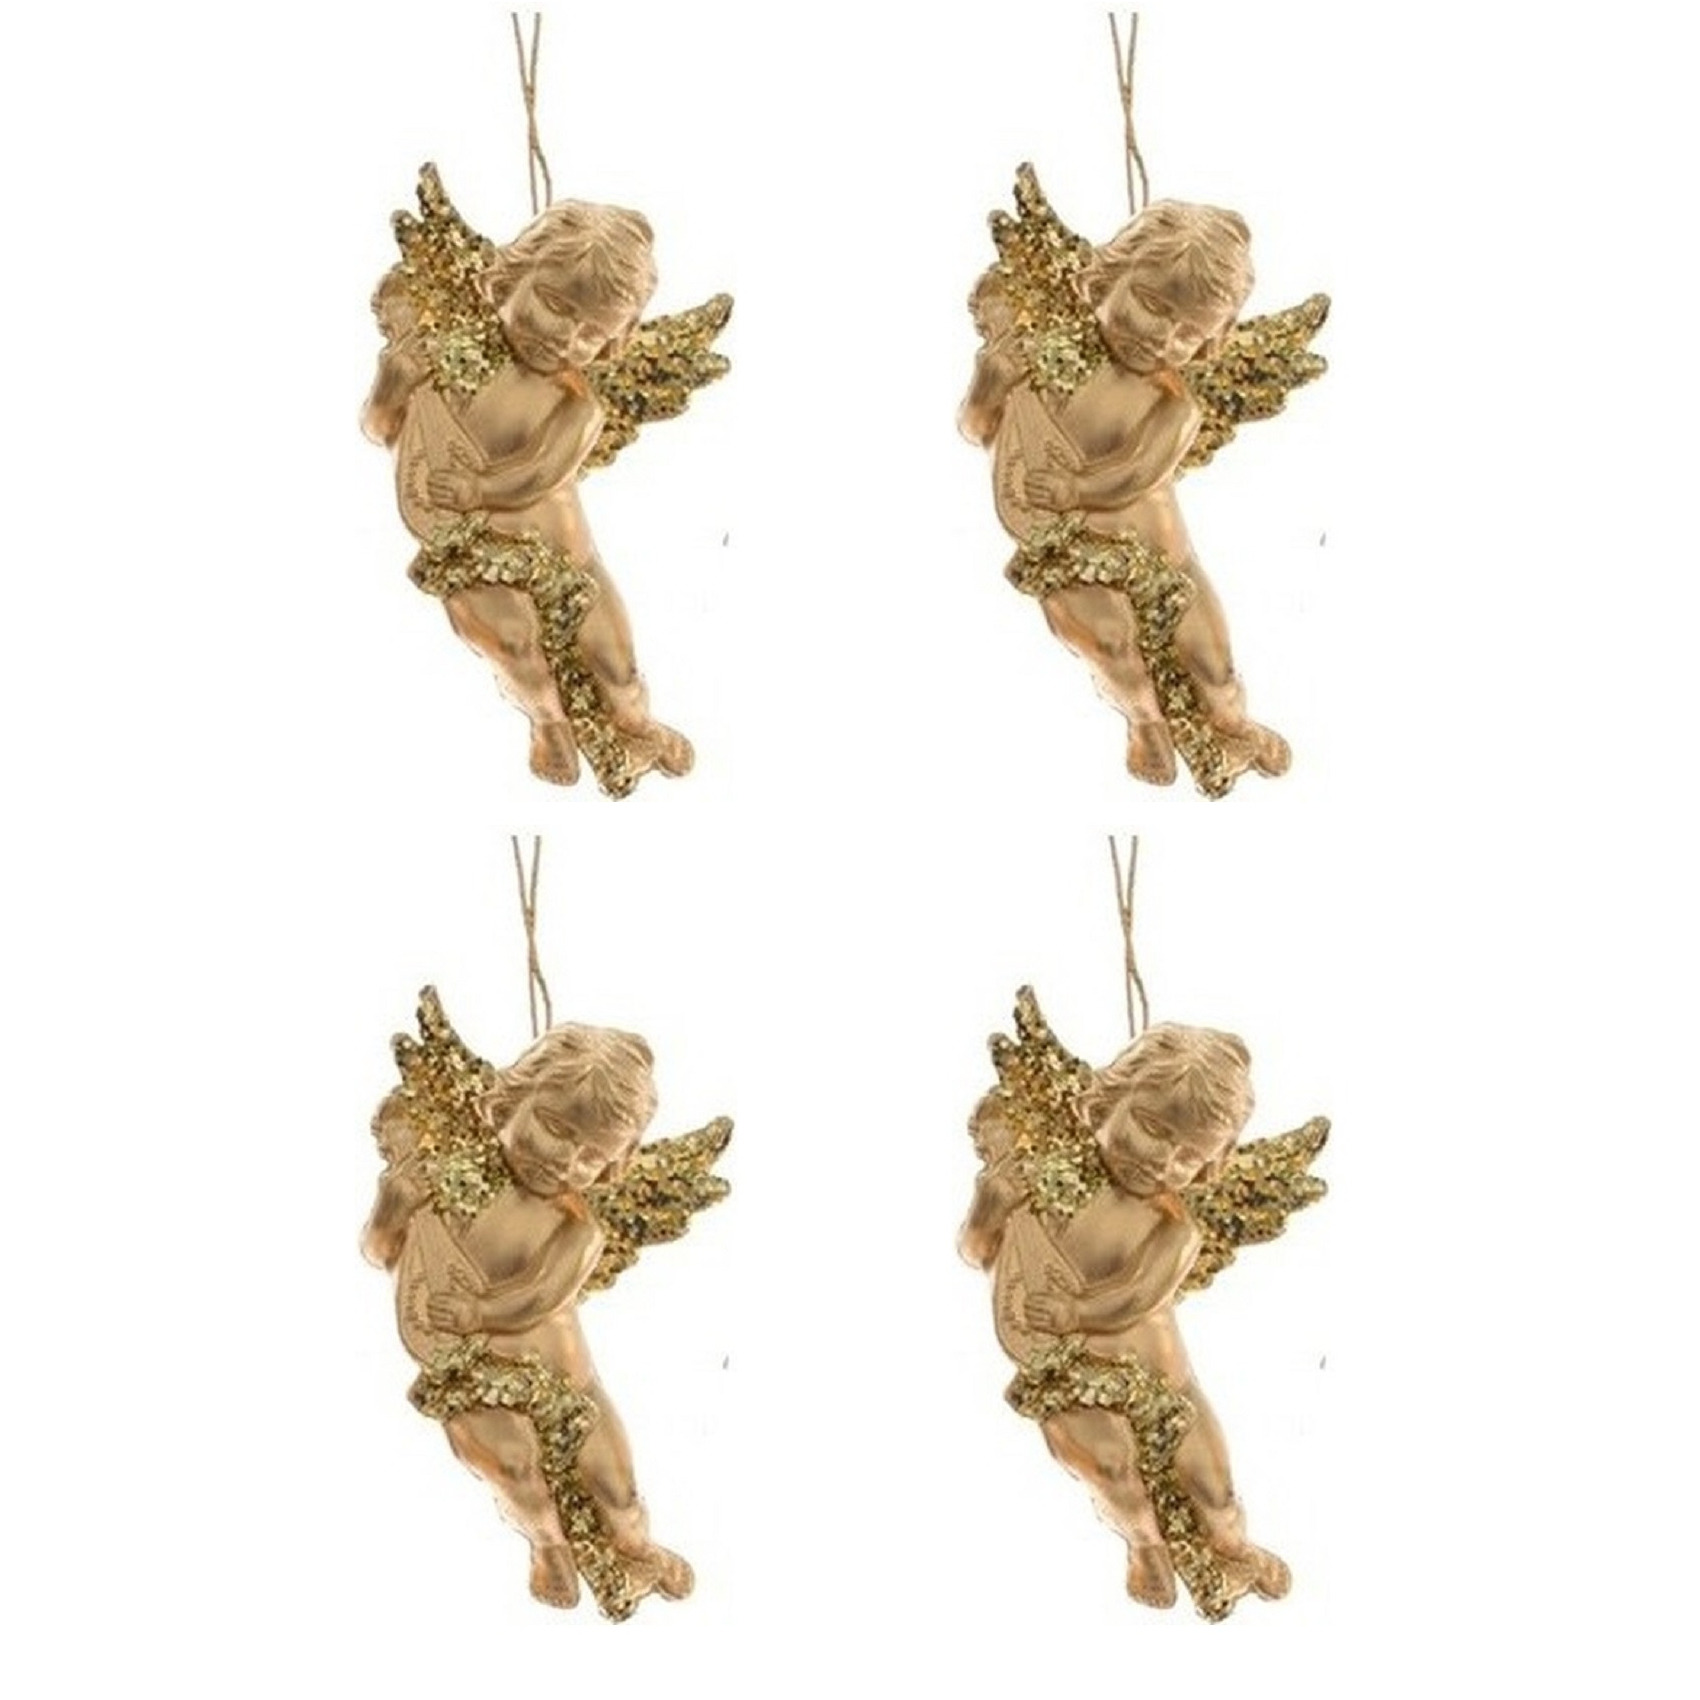 4x Kerstboomhanger-Kersthanger gouden engelen met lute 10 cm